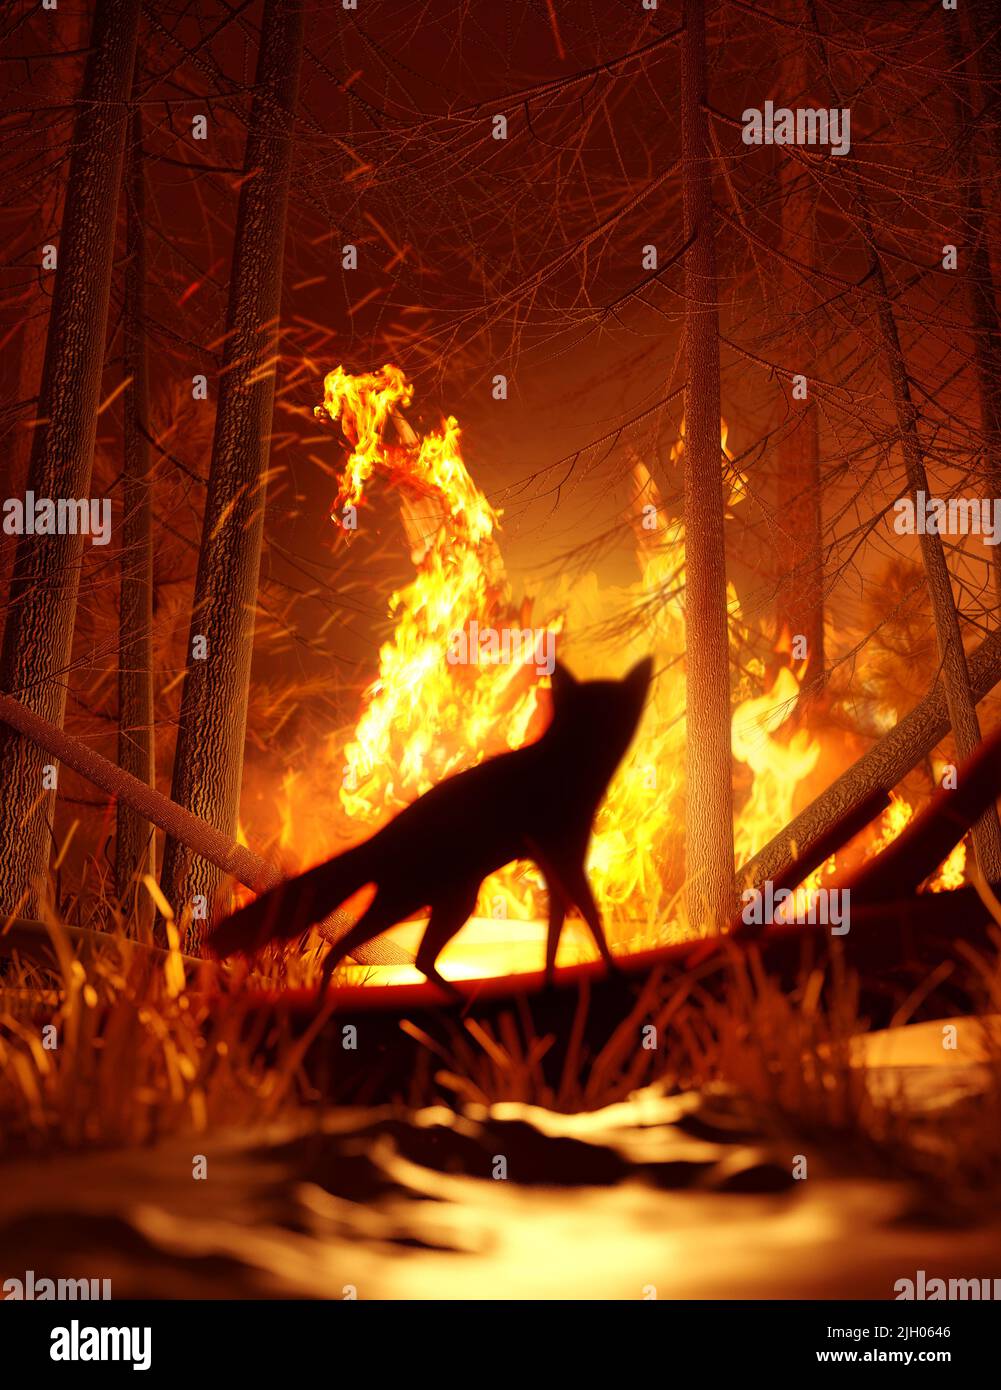 Ein Fuchs hält schnell an, um die Zerstörung seines Lebensraums durch einen Waldbrand zu beobachten, bevor er entkommen kann. Klimawandel und extreme Wetterereignisse 3D krank Stockfoto